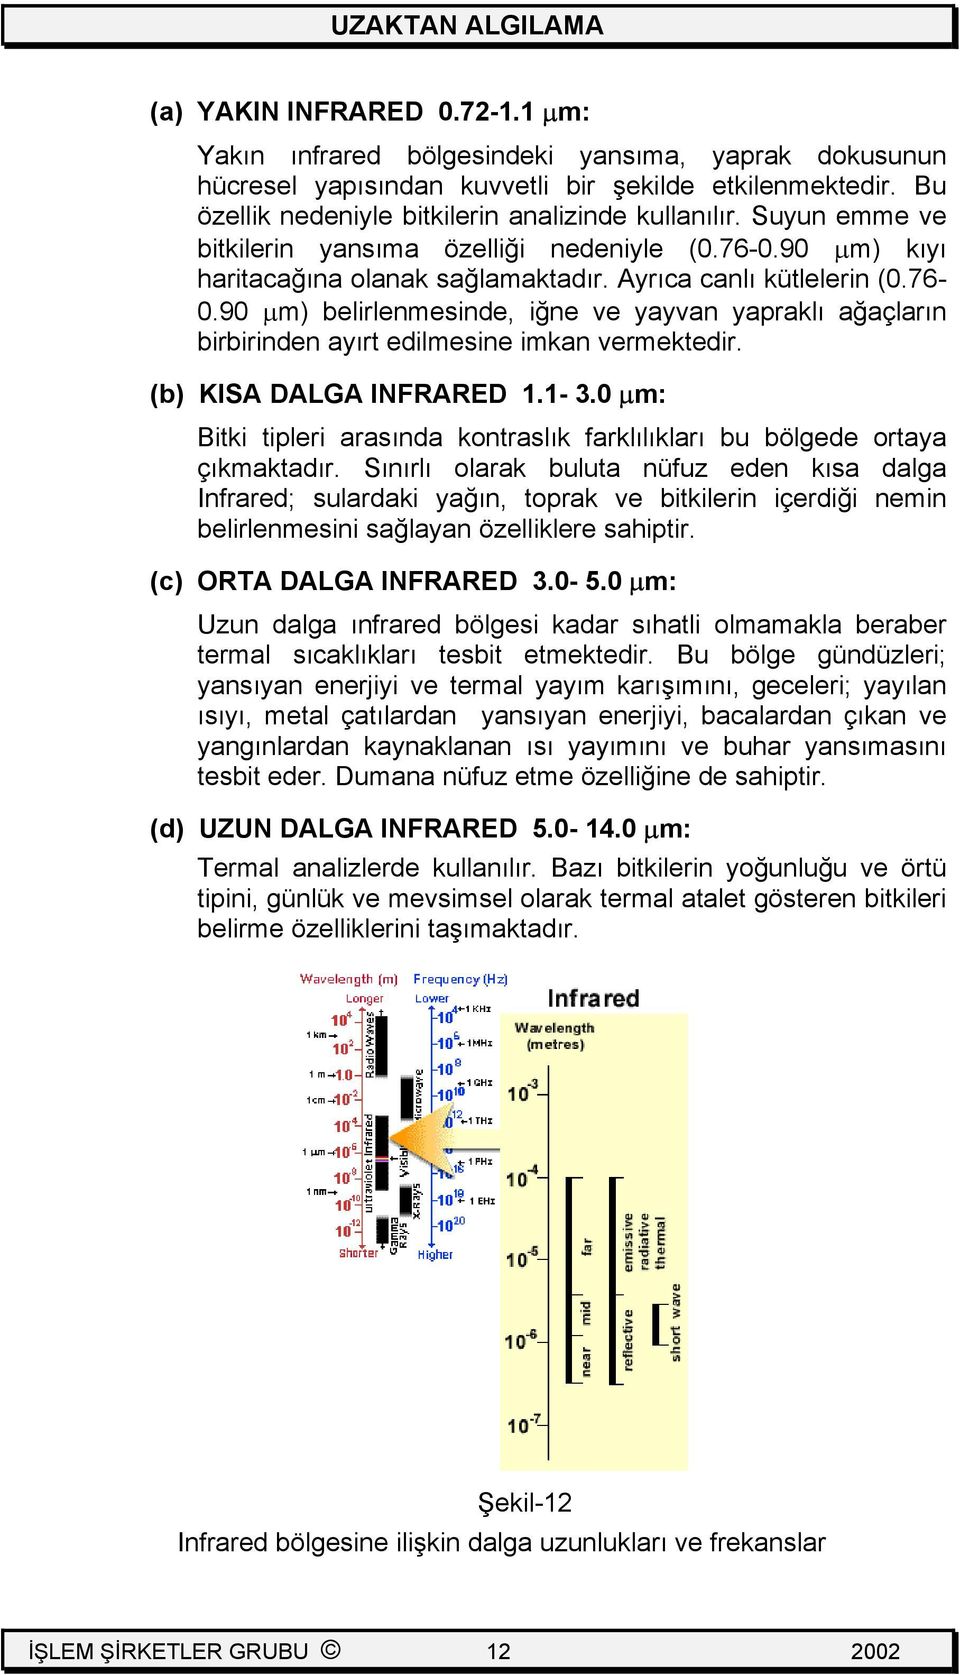 (b) KISA DALGA INFRARED 1.1-3.0 µm: Bitki tipleri arasında kontraslık farklılıkları bu bölgede ortaya çıkmaktadır.